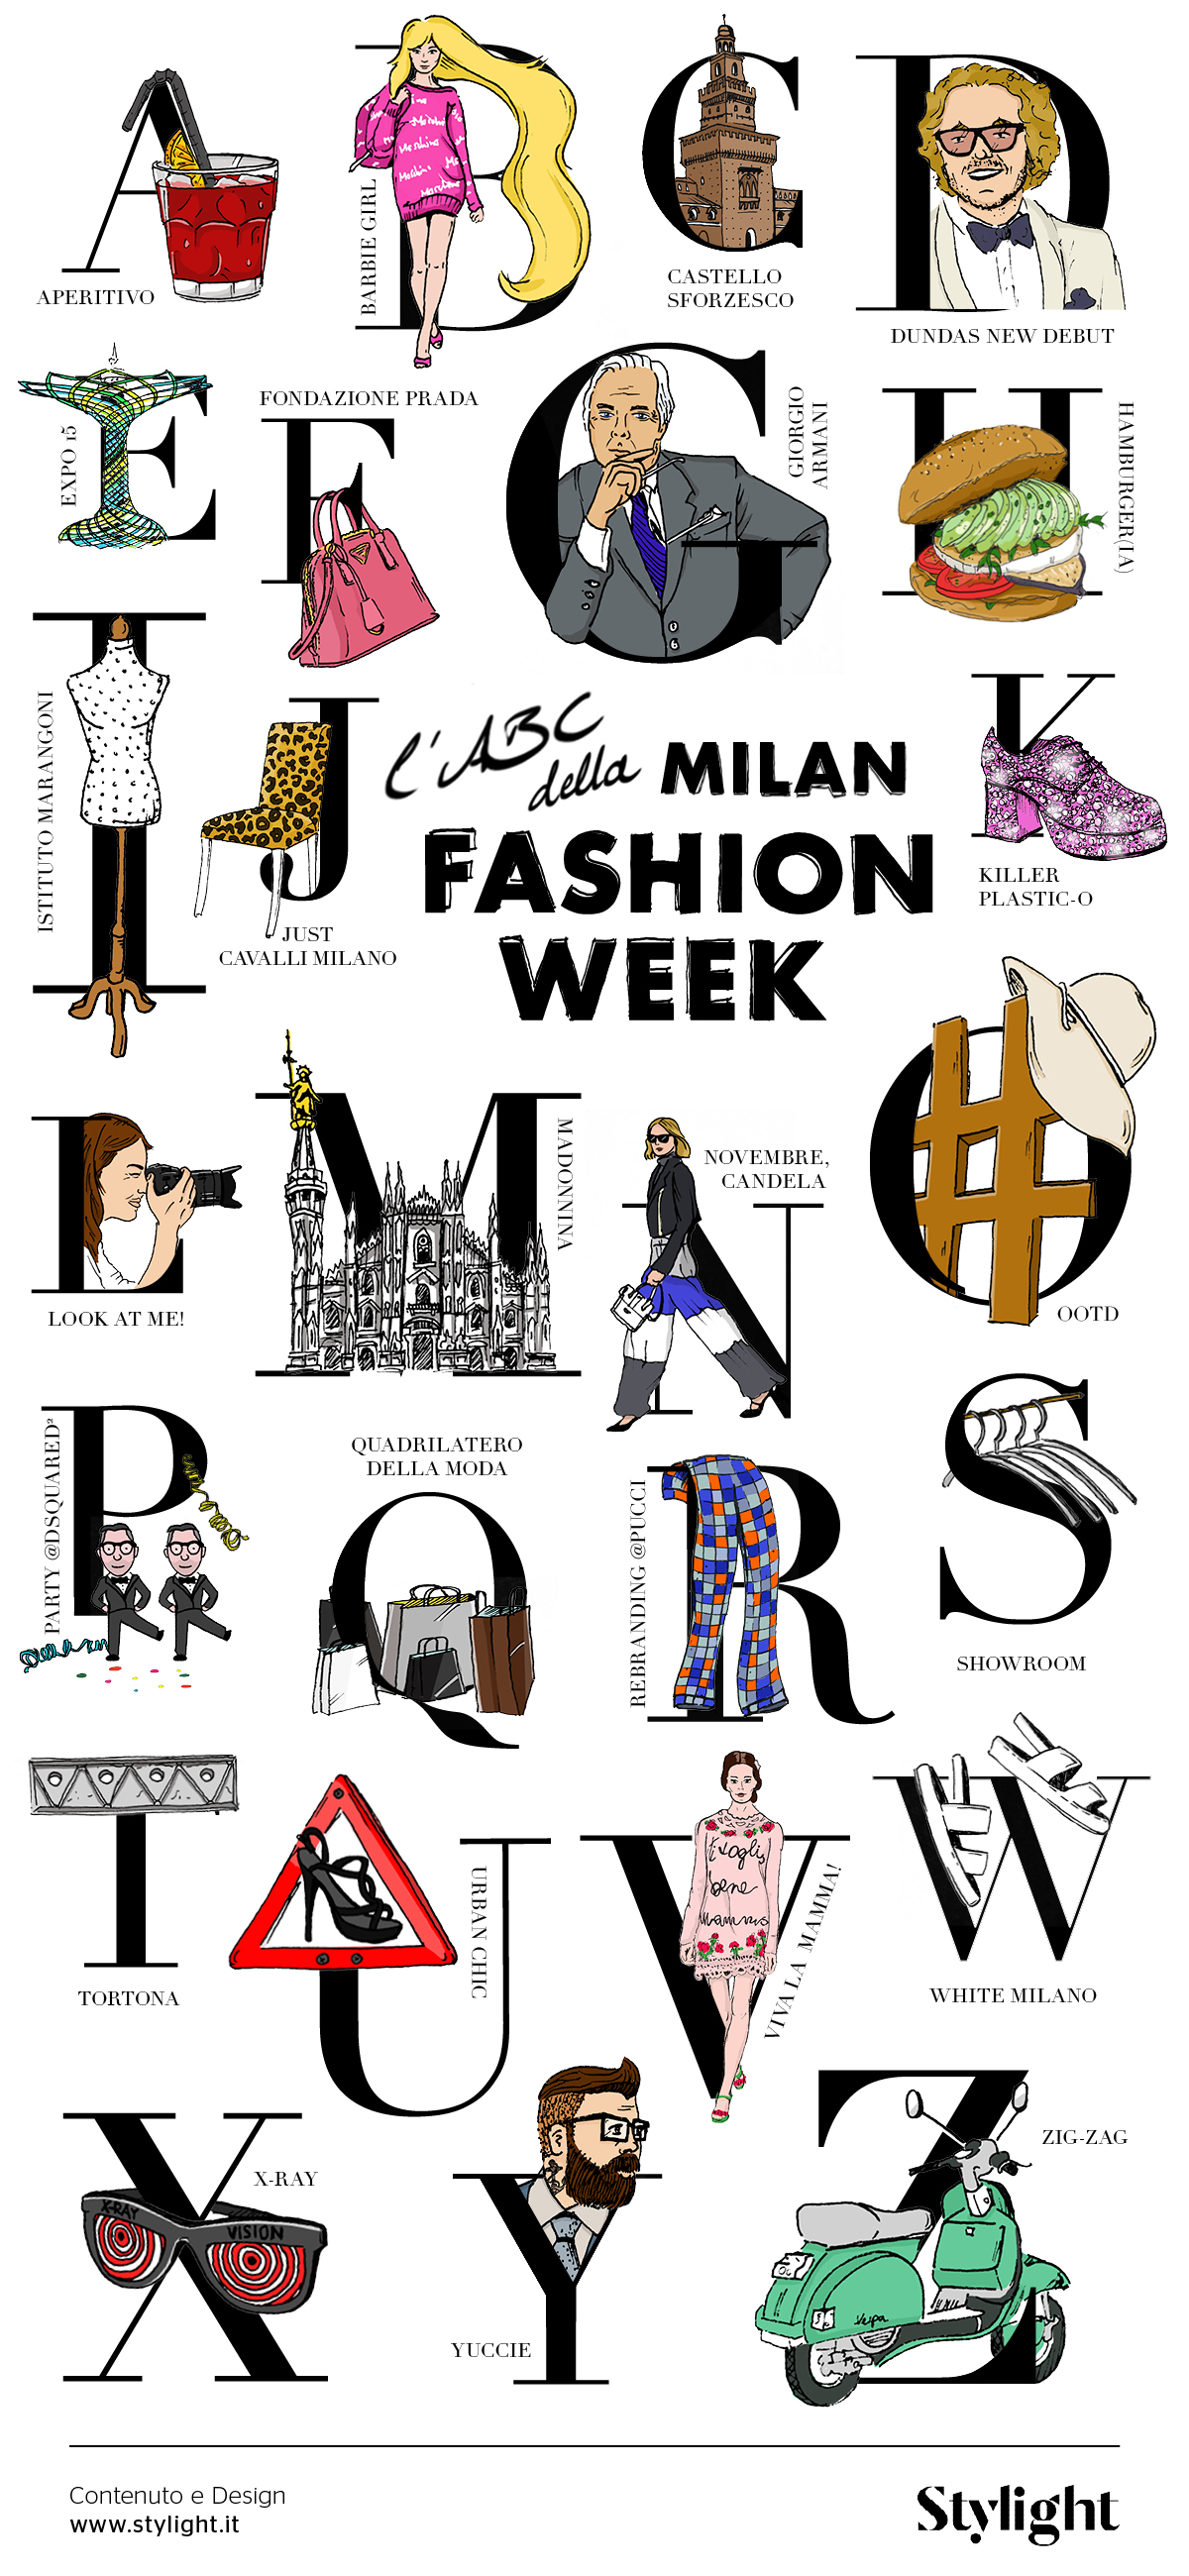 ABC_Milan Fashion Week